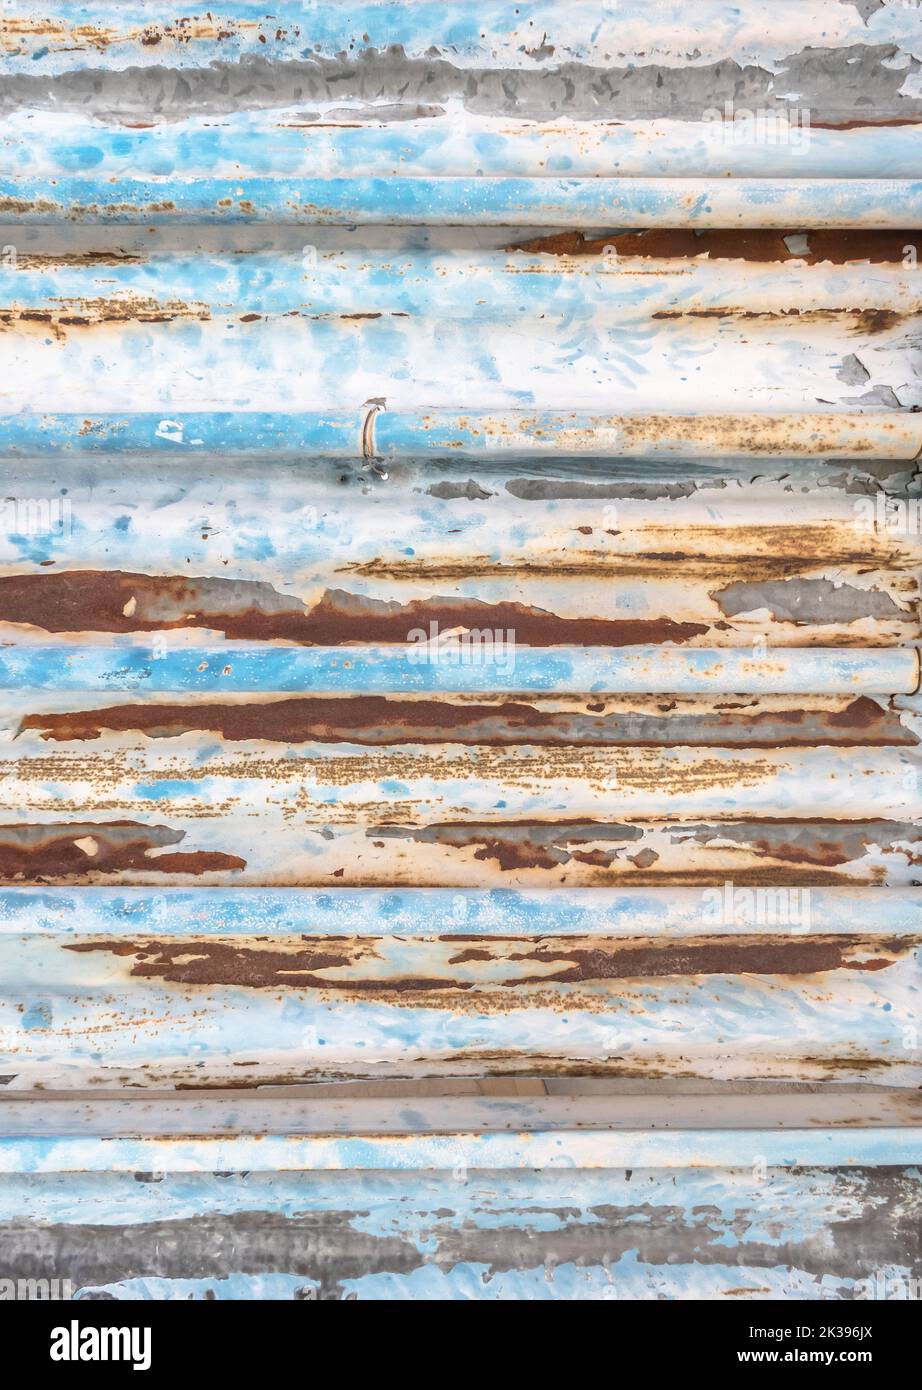 La texture de métal vieux carton ondulé avec des points de rouille sur la surface et le peindre. Banque D'Images